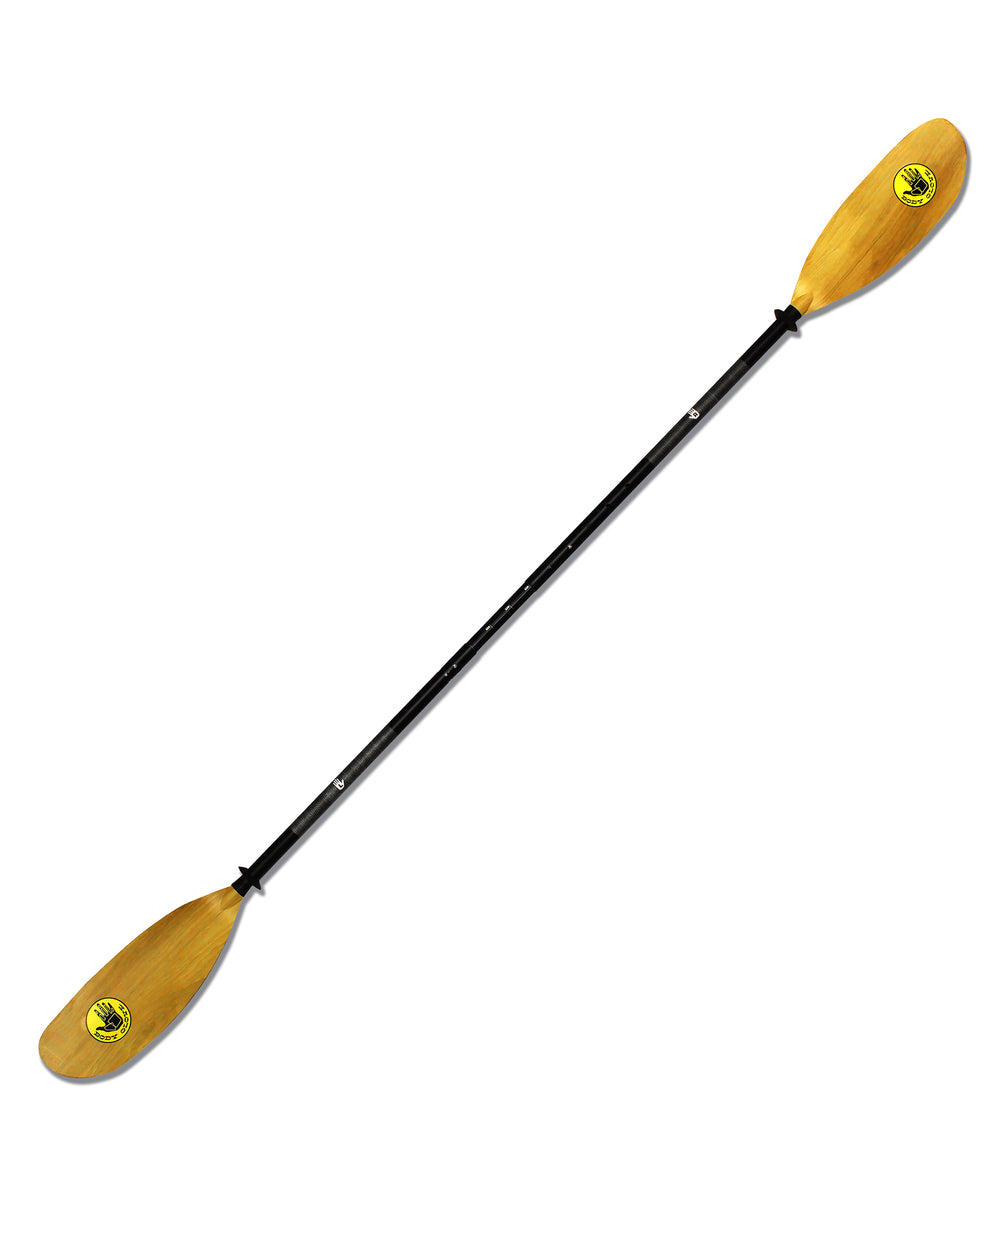 Kayak Paddle Mitts Neoprene Thicken Anti Skid Oars Kayak Paddle Grips Gloves  for Boating Kayaking Rafting Women Men Canoe - AliExpress